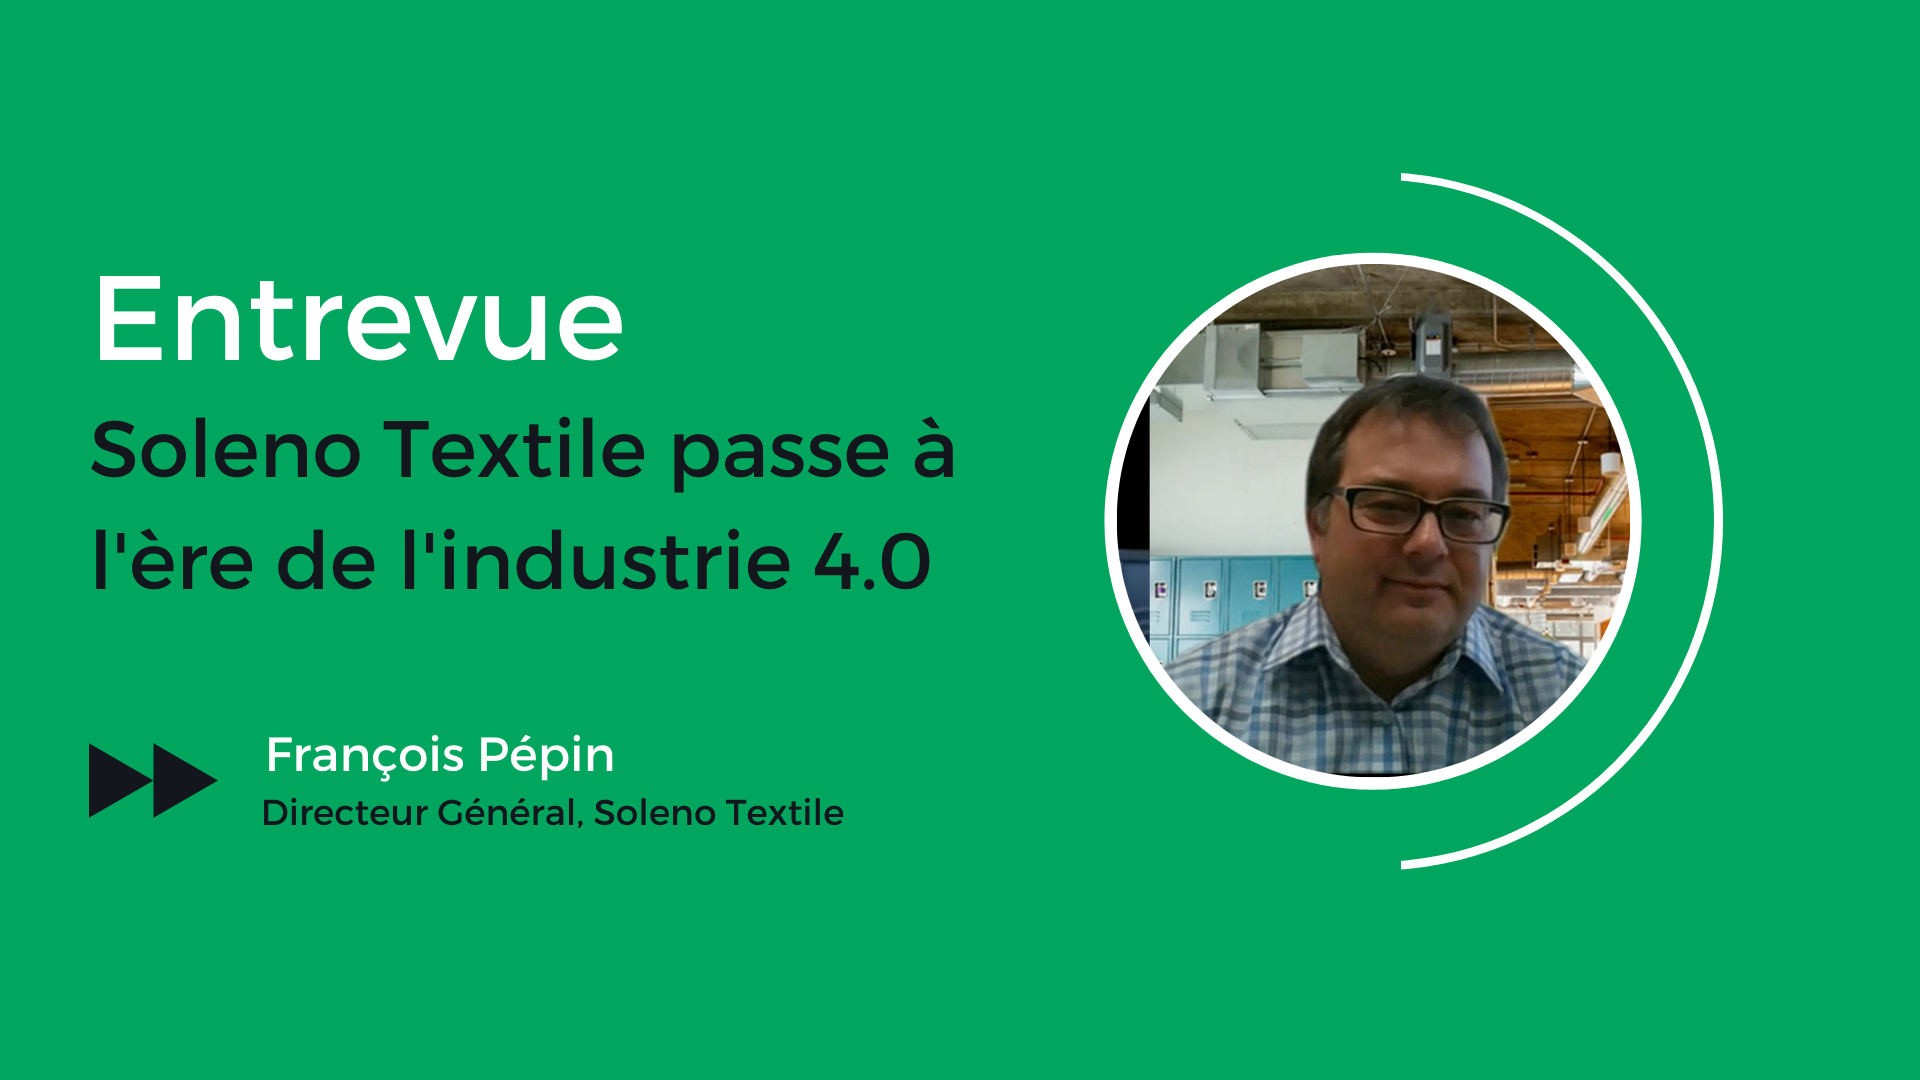 Soleno Textile passe à l’ère de l’industrie 4.0 – Entrevue avec François Pépin, directeur général de Soleno Textile.